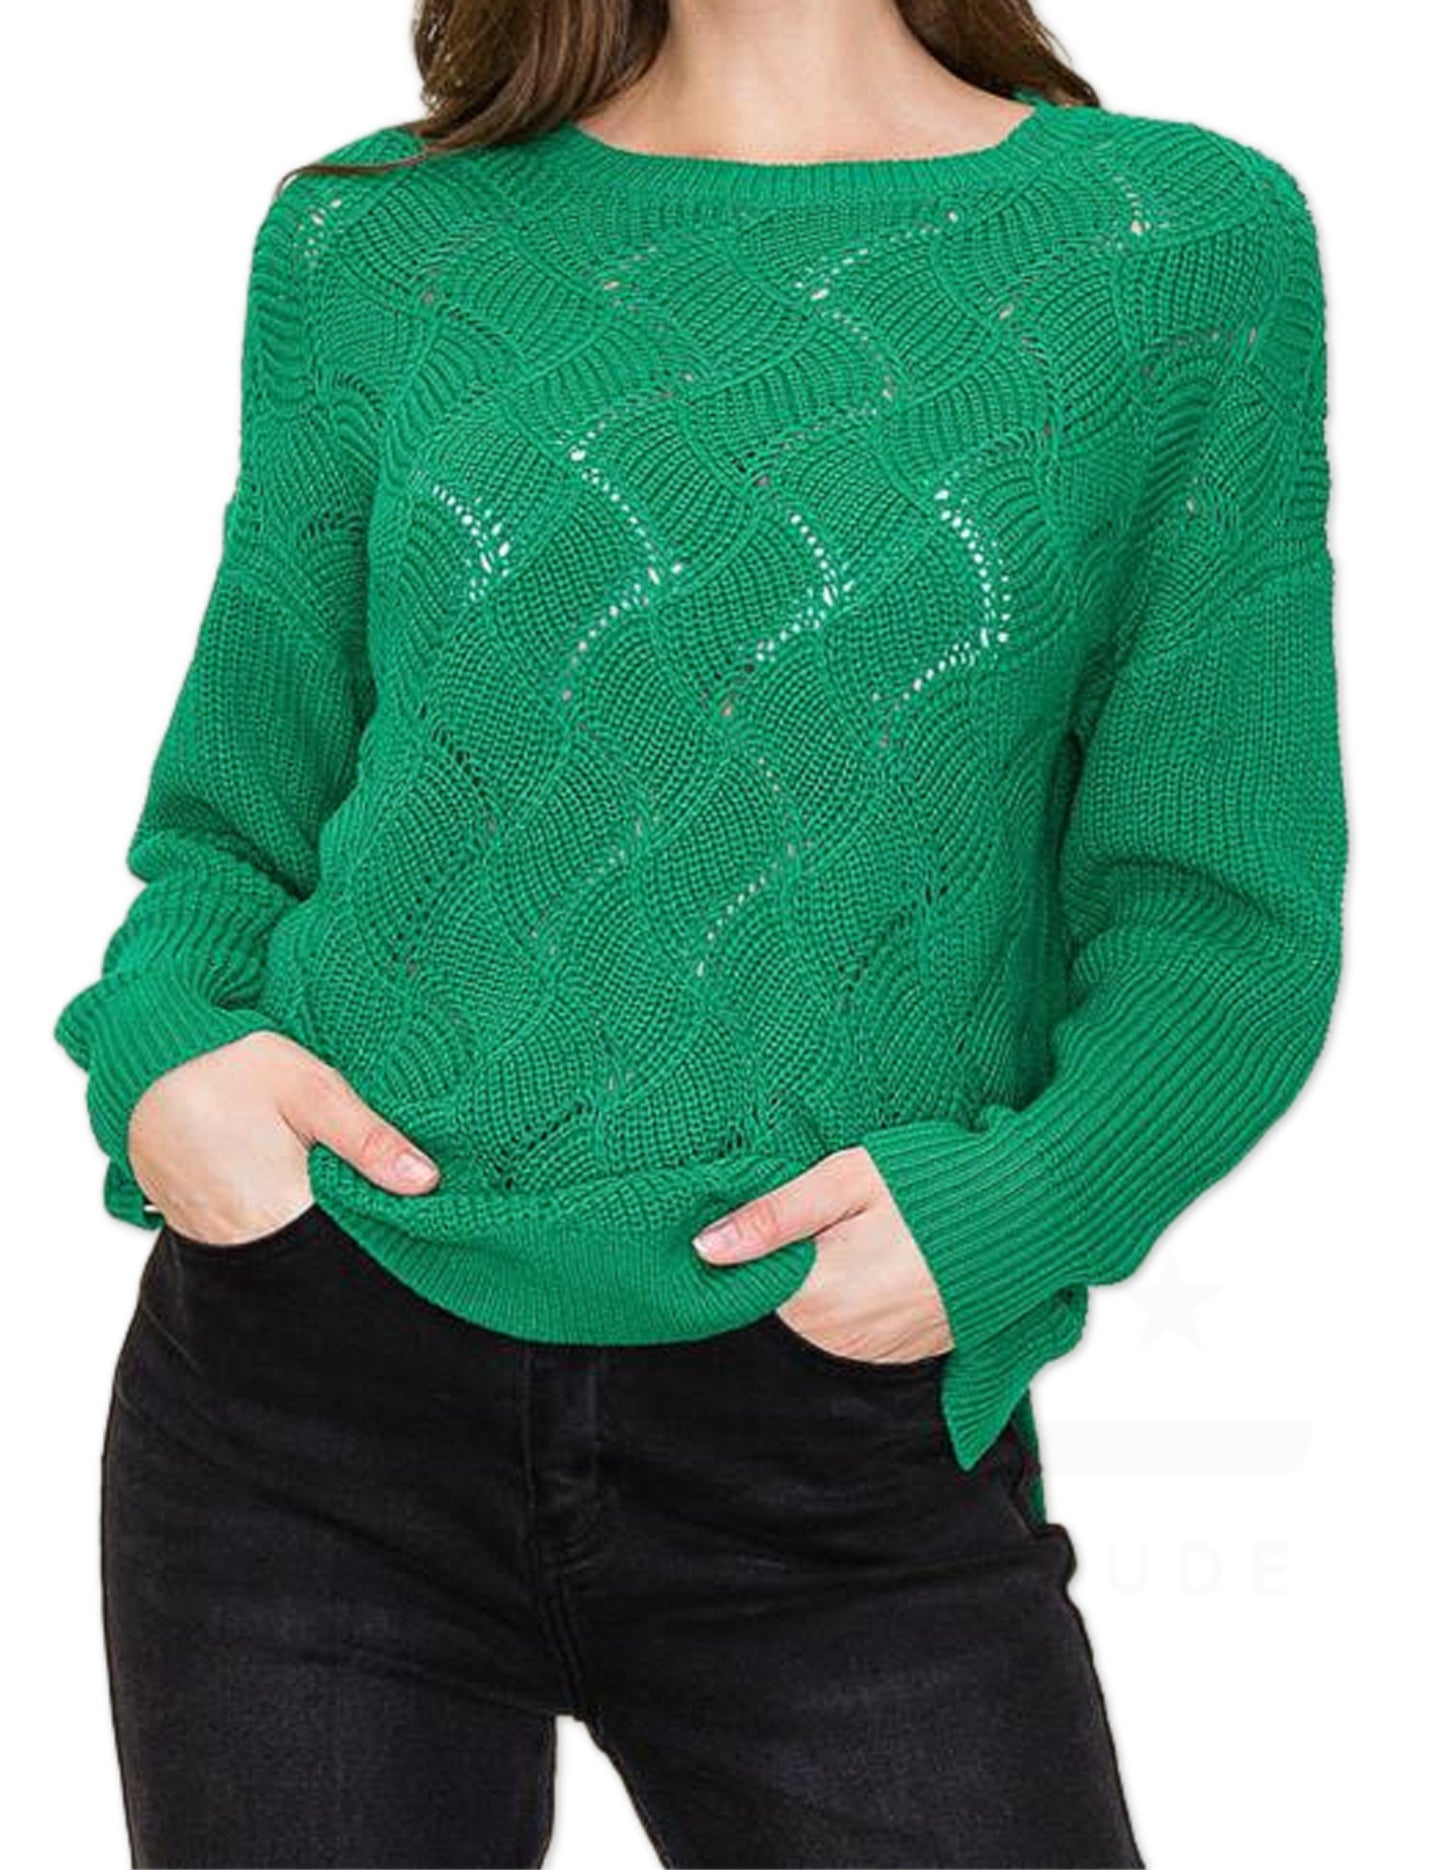 Crochet Detail Sweater - Green